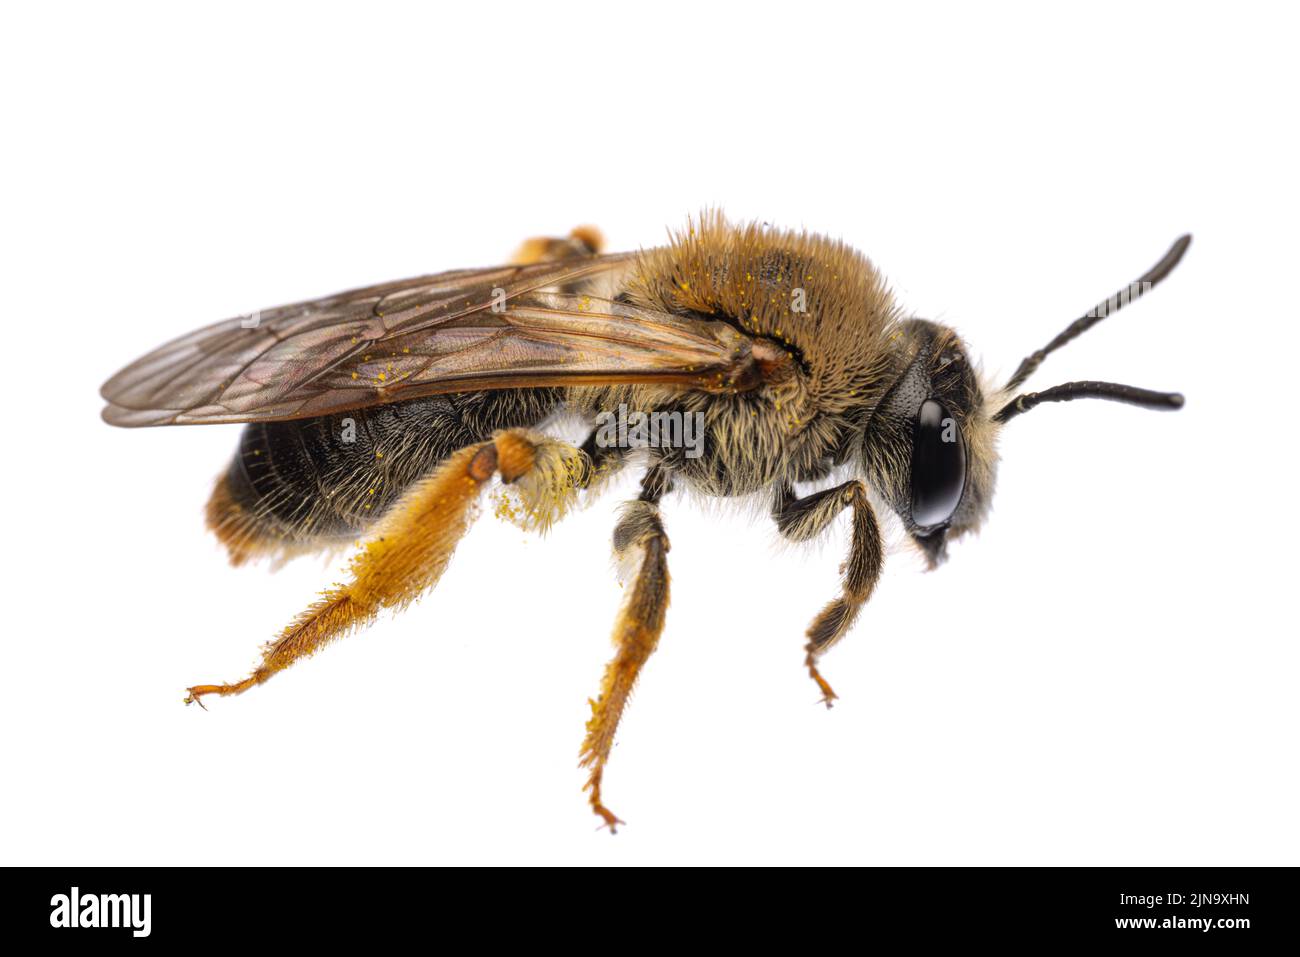 Insectes d'europe - abeilles: Vue latérale avec ailes de la femelle Andrena haemorrhoa (rotschopfige Sandbiene allemand) isolée sur fond blanc Banque D'Images